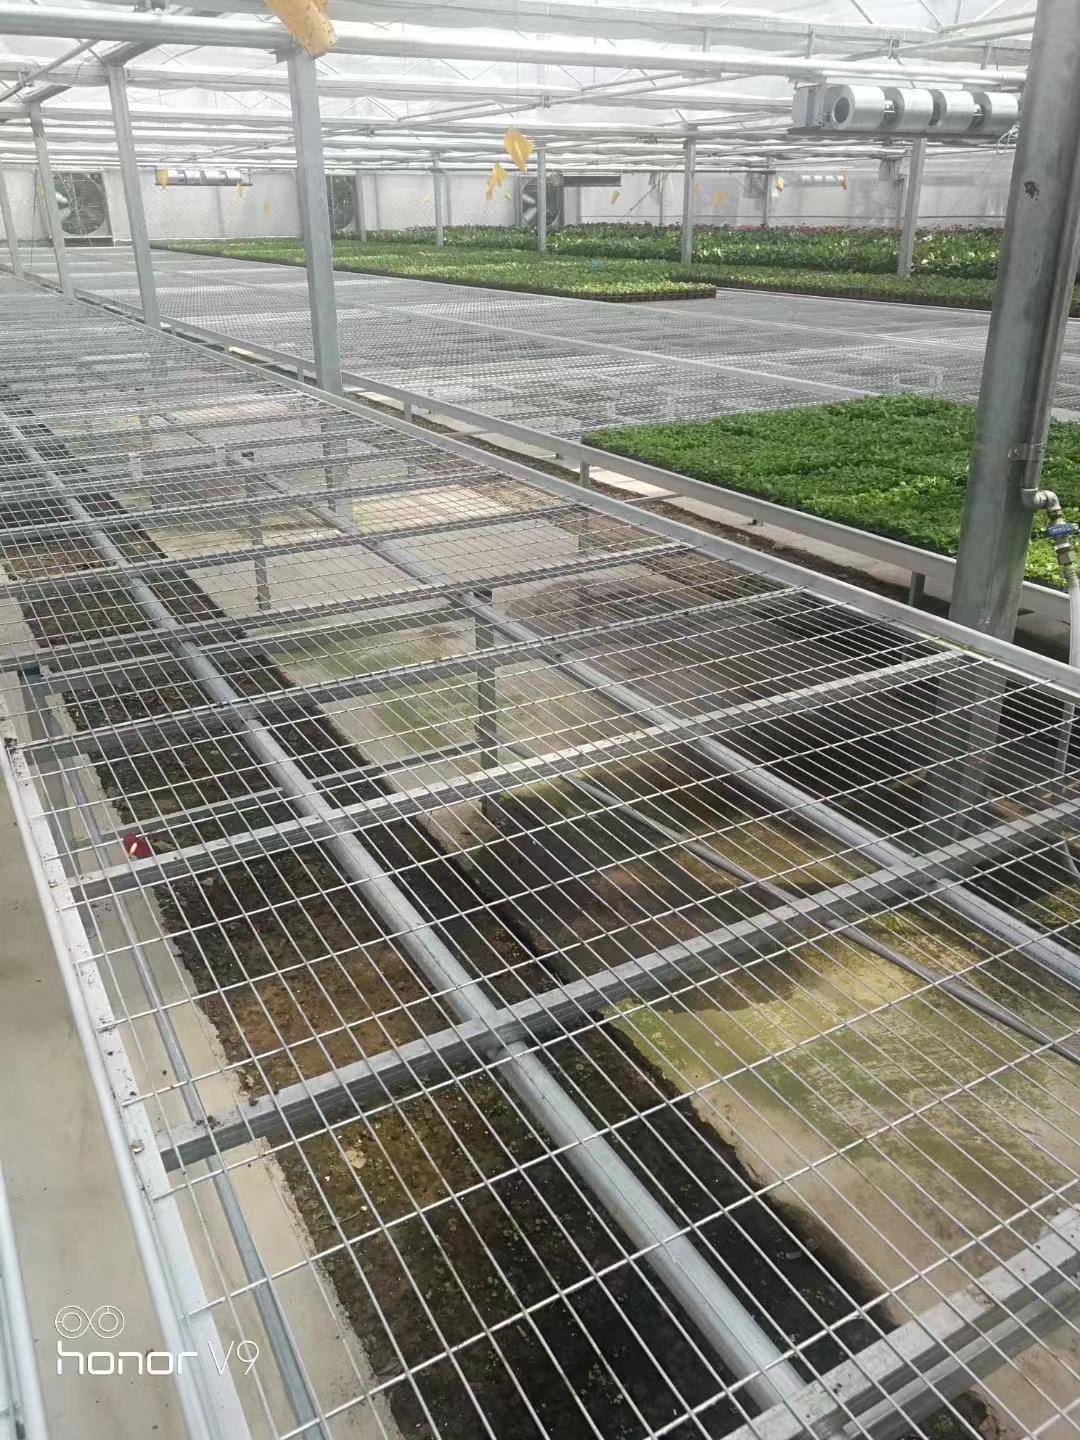 优质苗床网花卉移动苗床在现代农业中的应用